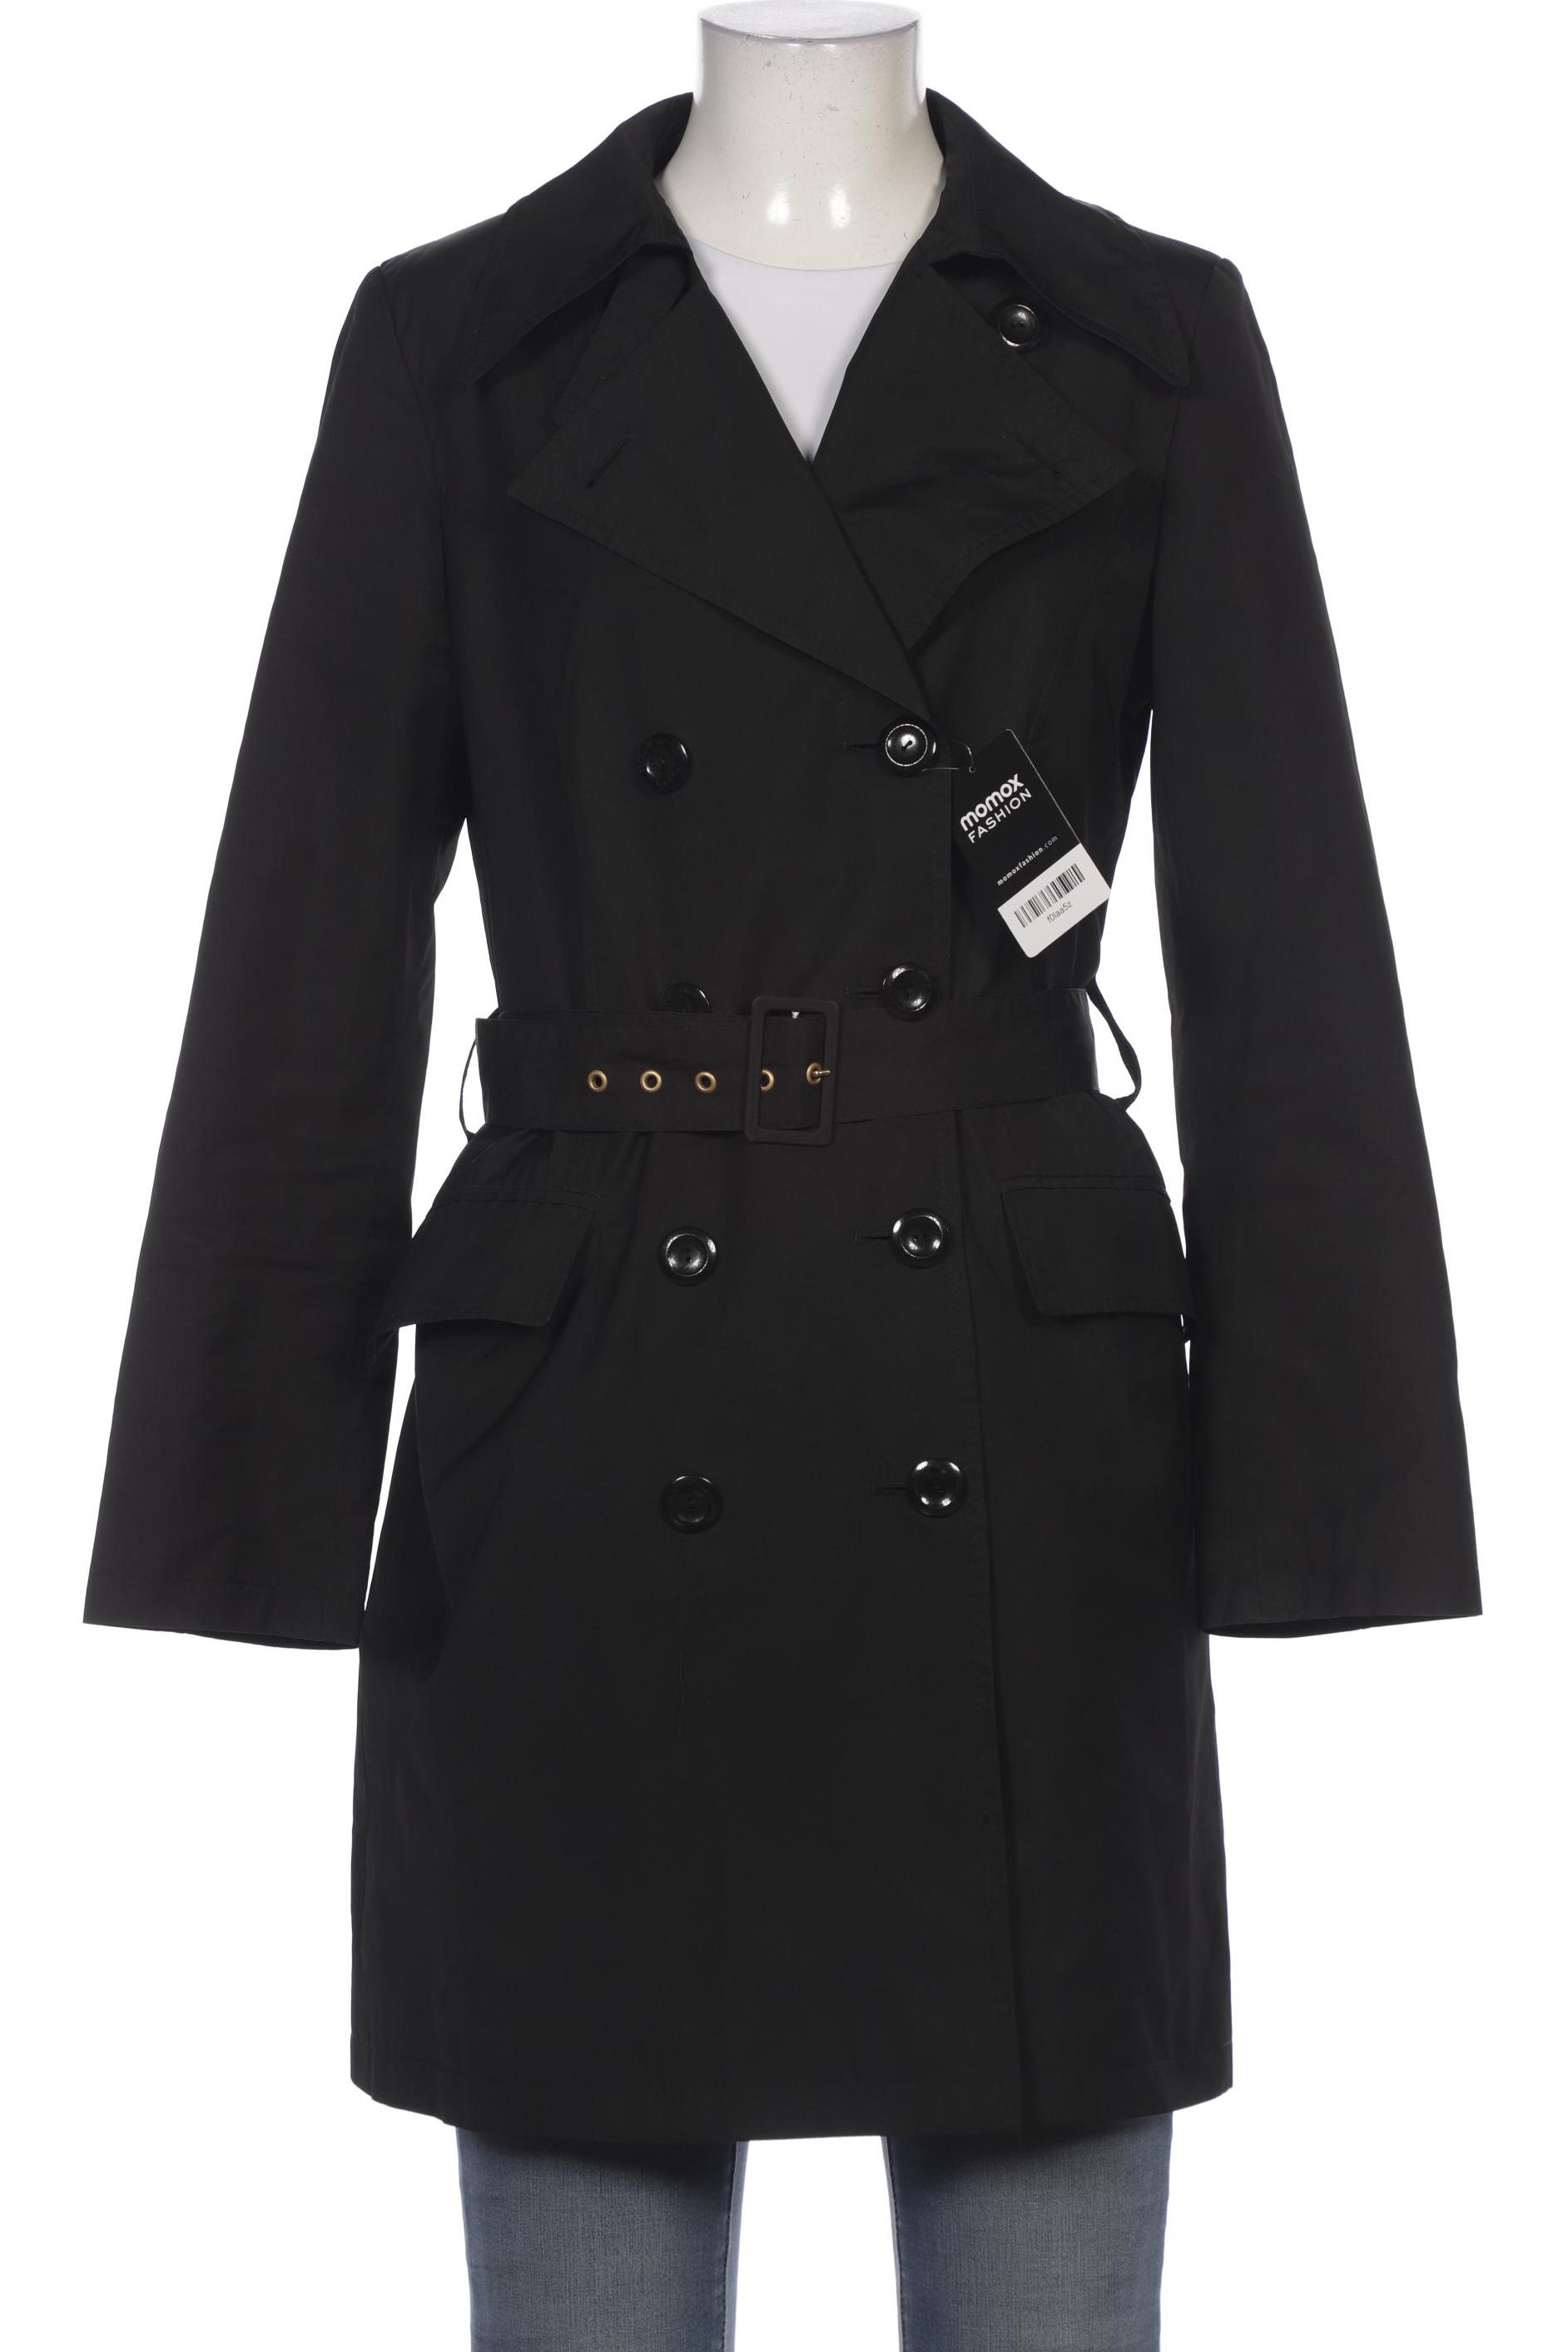 Rosner Damen Mantel, schwarz, Gr. 36 von ROSNER